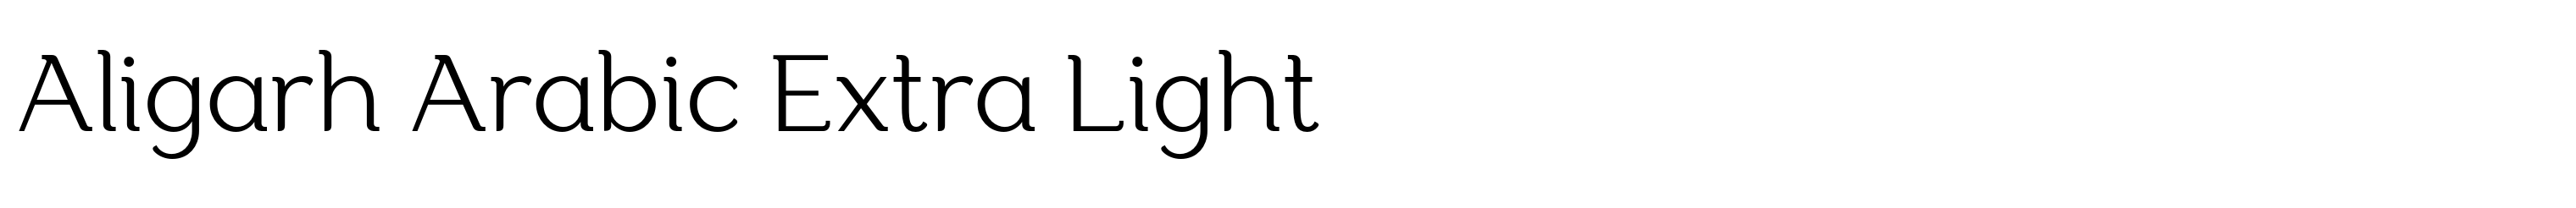 Aligarh Arabic Extra Light